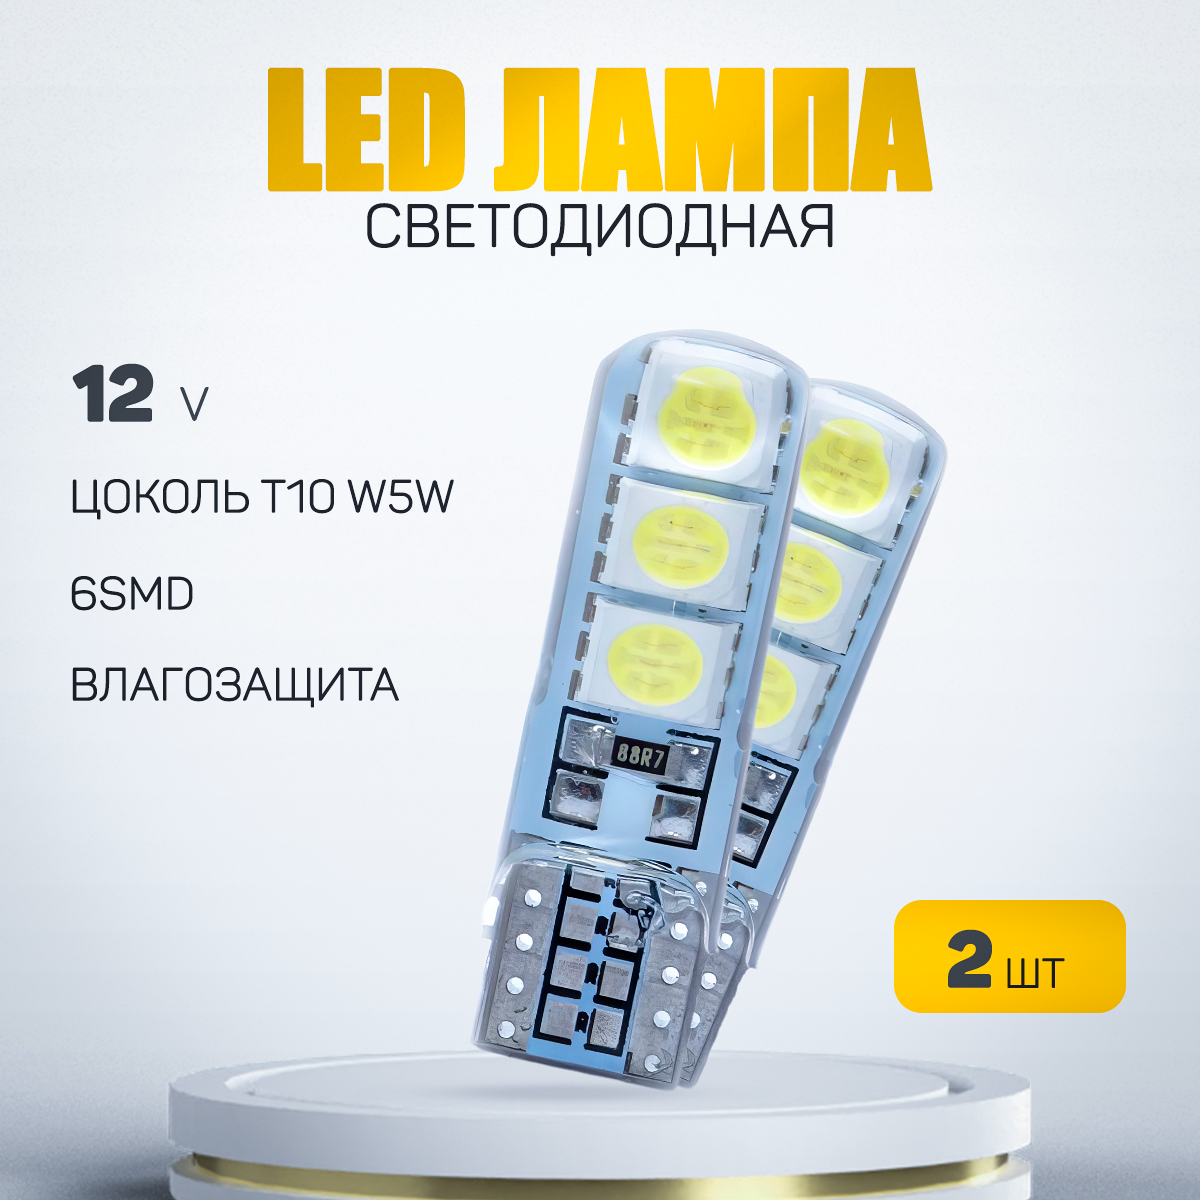 Автомобильная светодиодная лампа W5W-T10-6smd силиконовая LED для подсветки салона, багажника и номерного знака (12V), 2 шт